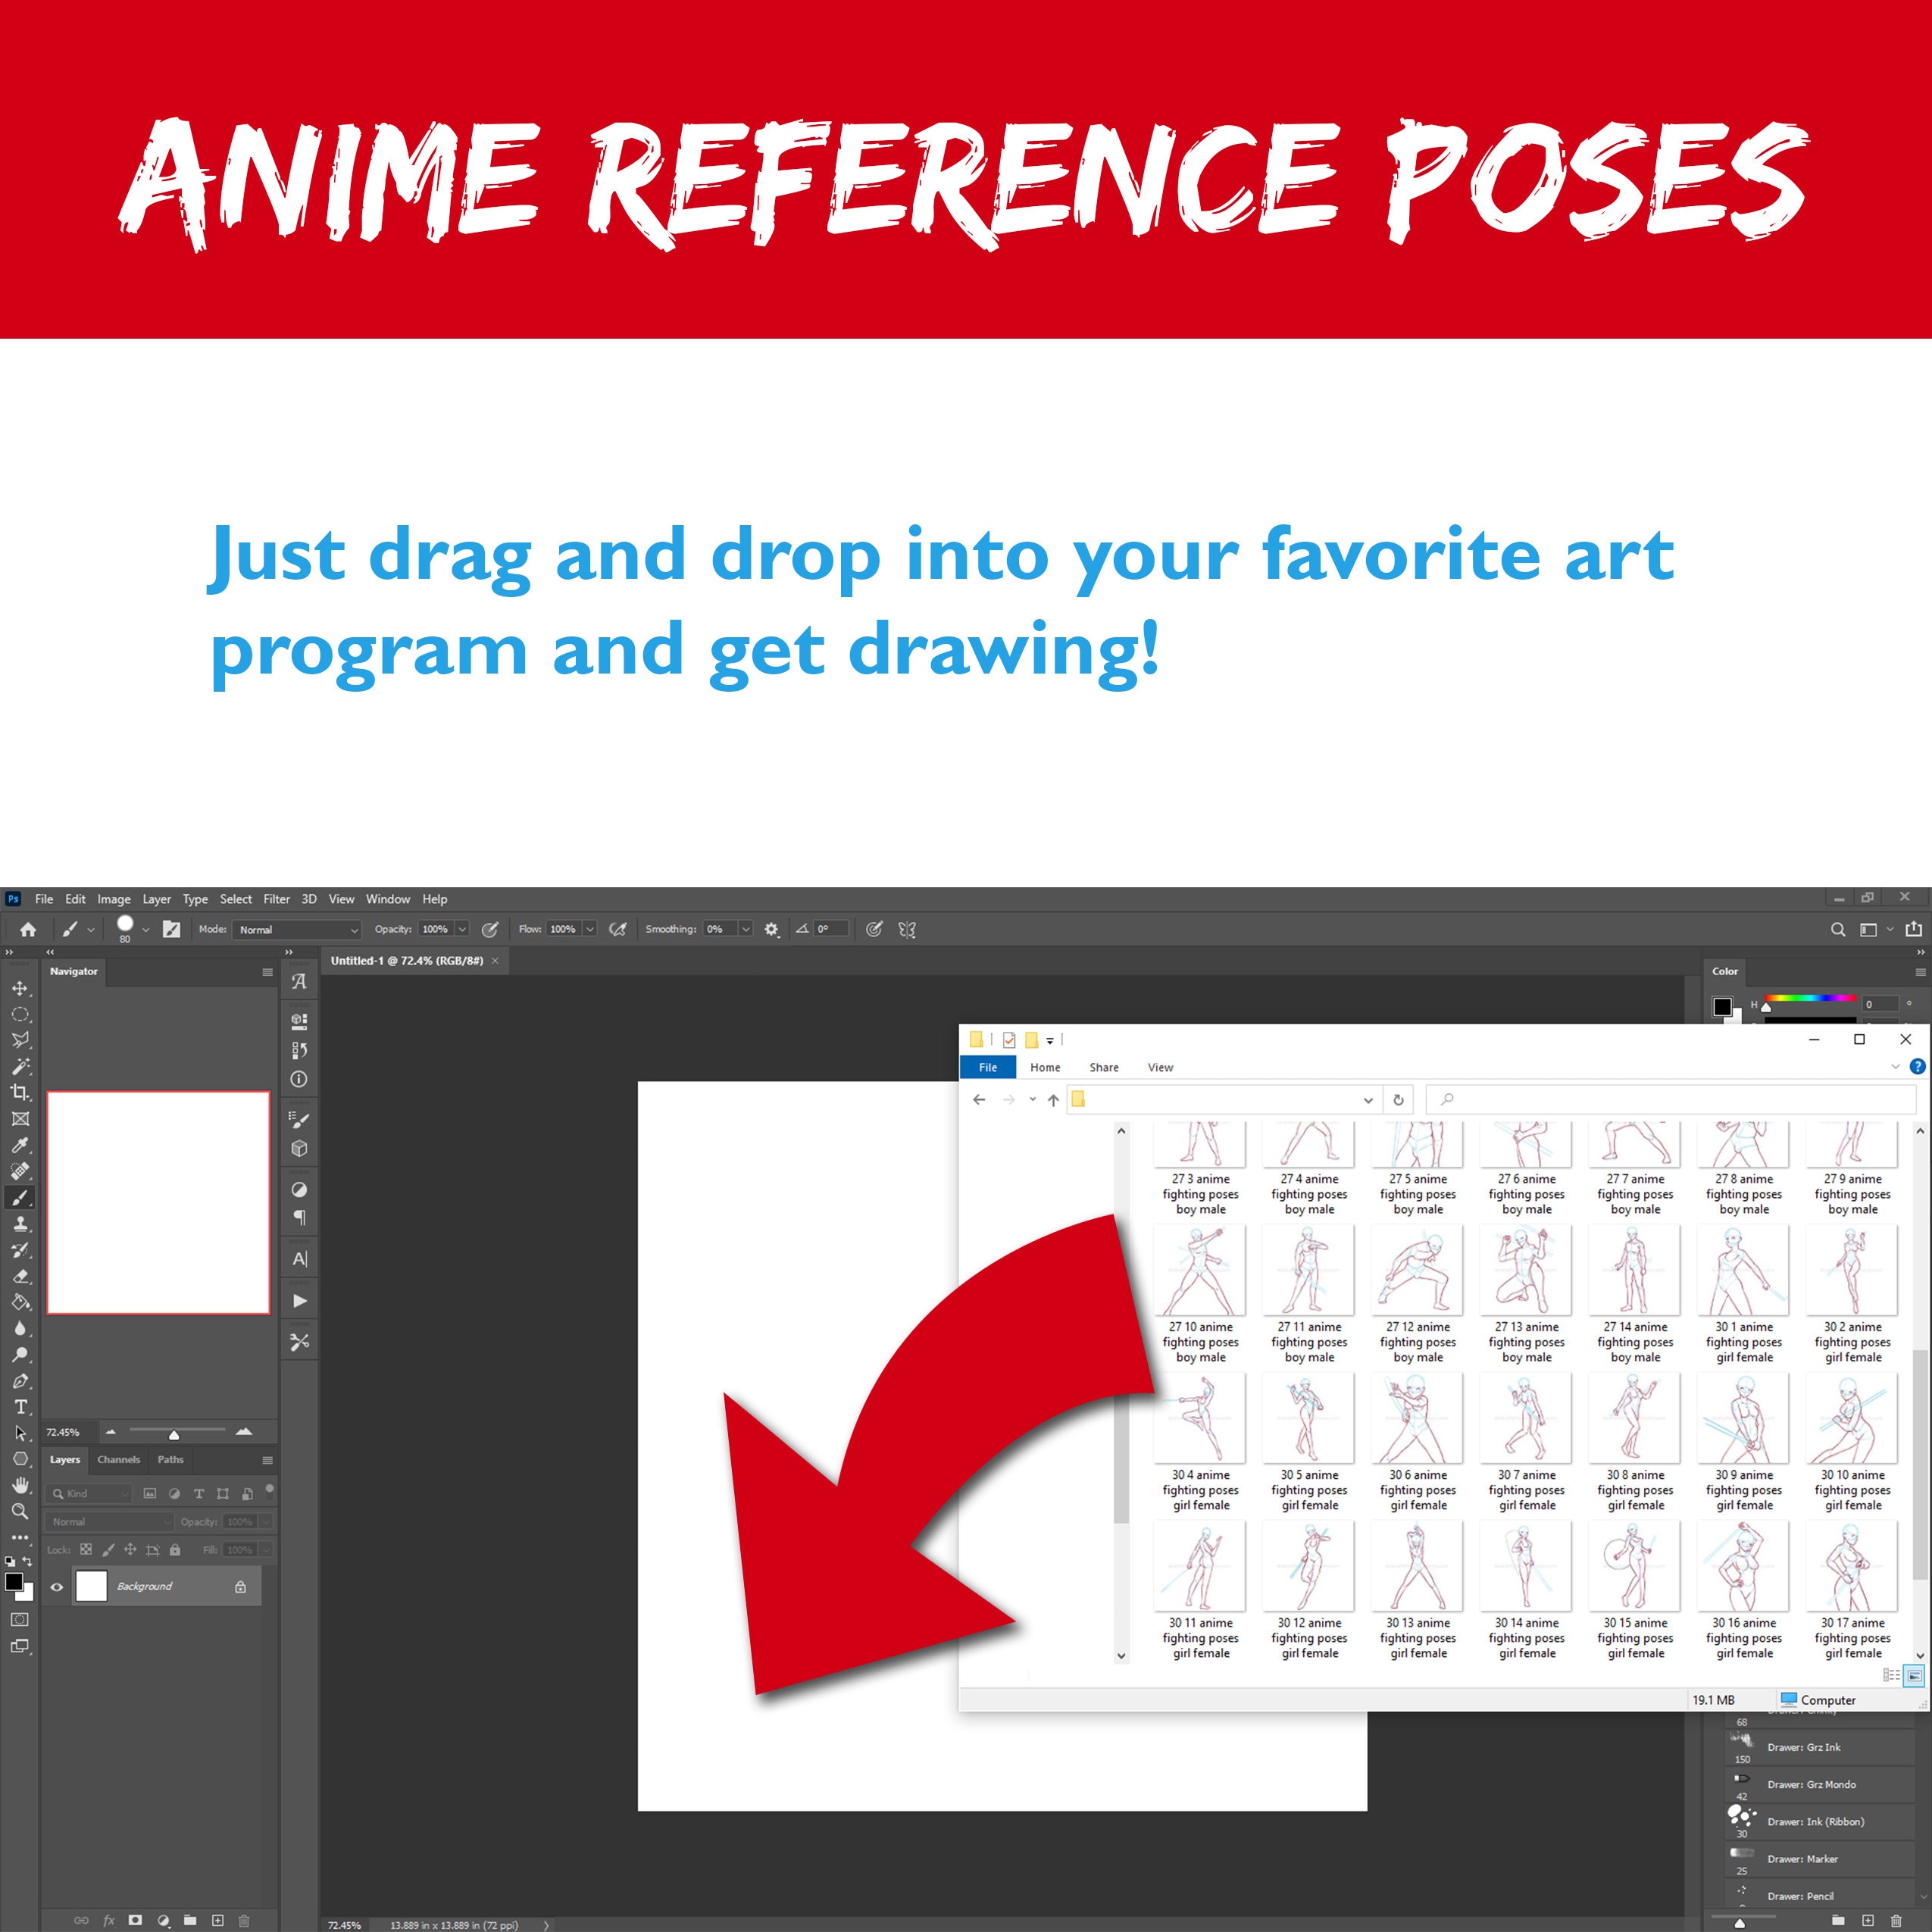 11 ideias de Anime luta  poses references, técnicas de desenho